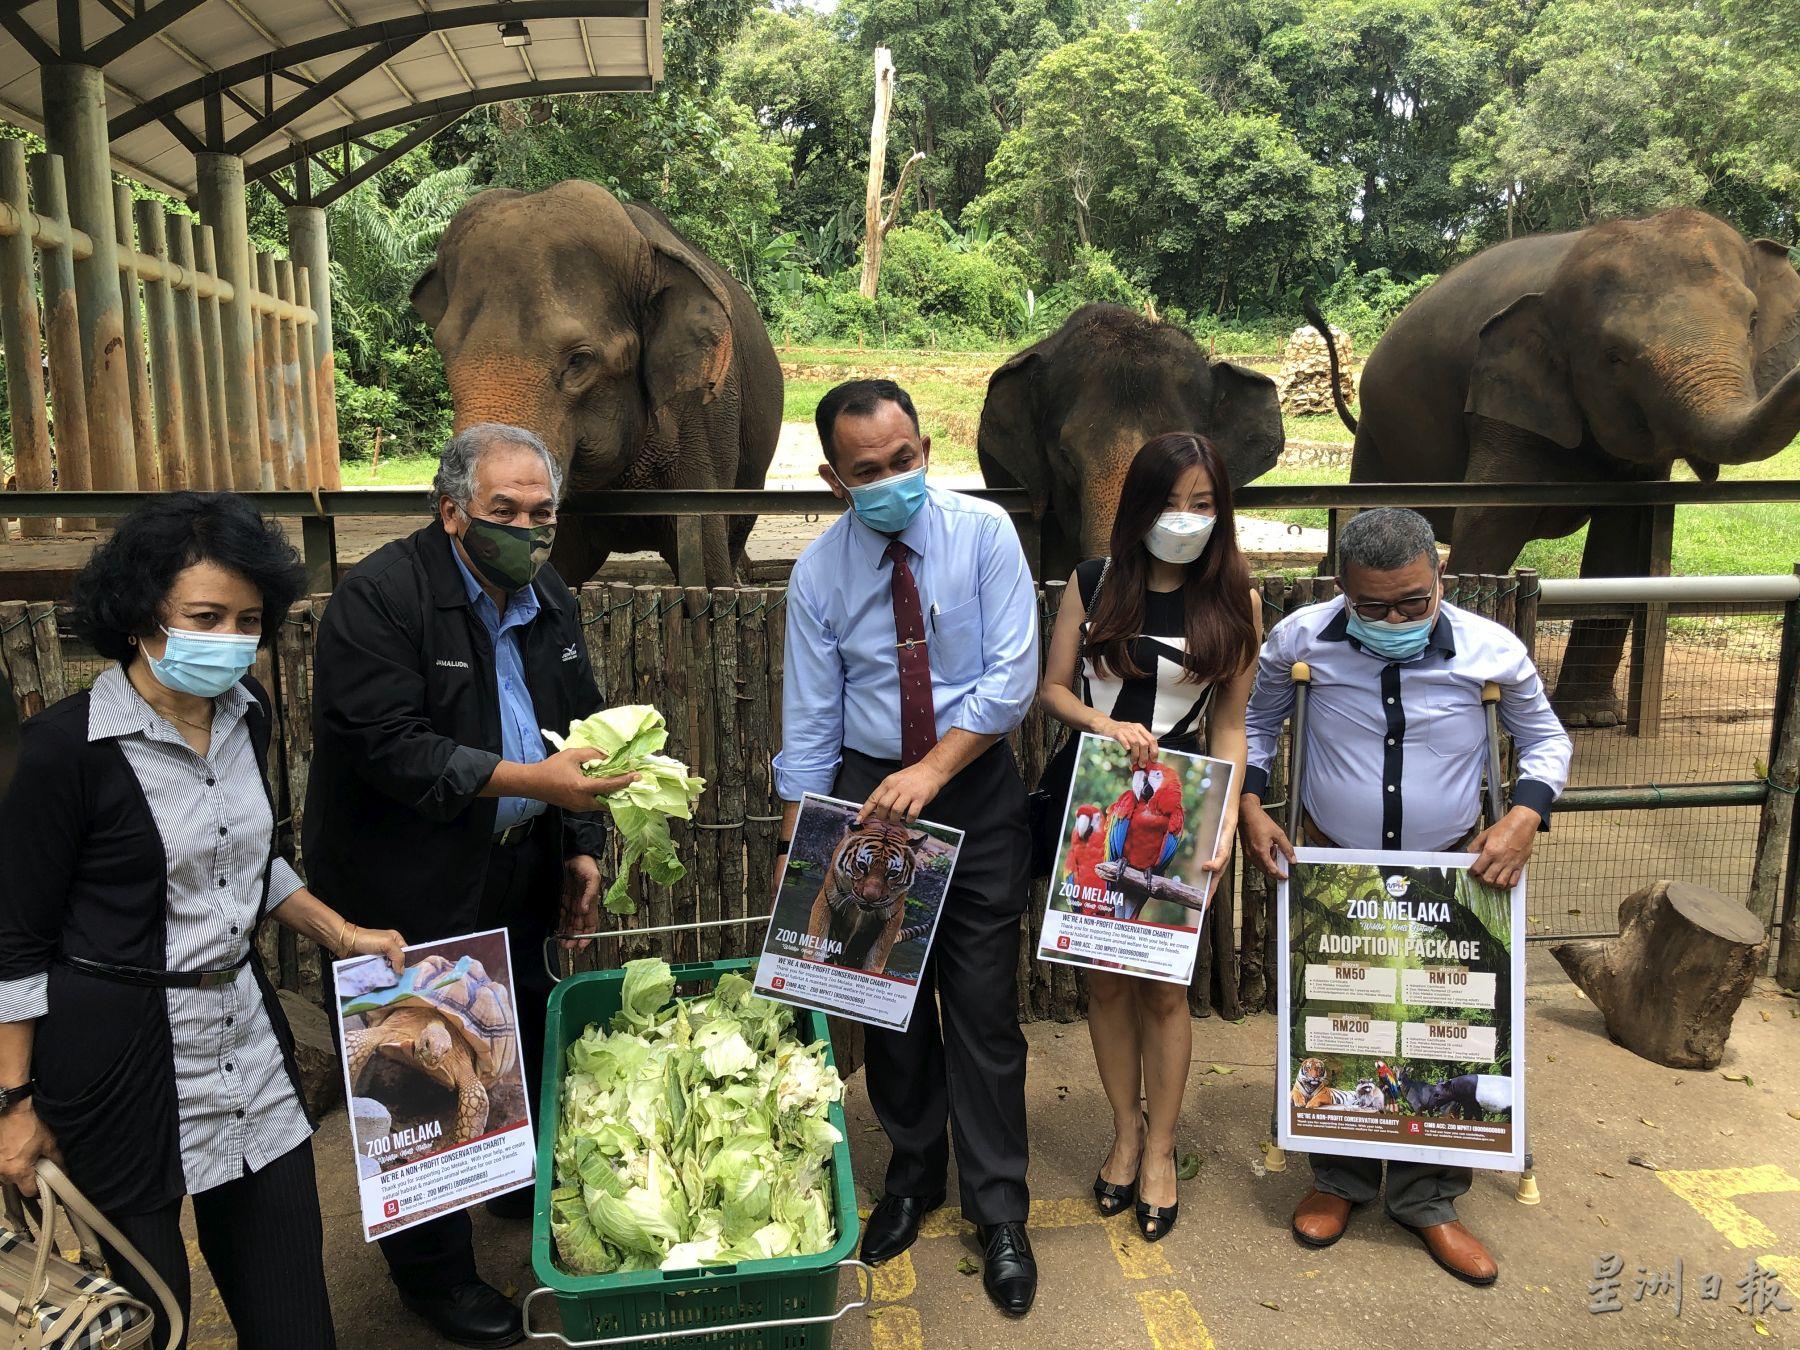 2家企业公司捐赠5吨粮食给甲动物园。左起为哈丽玛、嘉玛鲁丁、沙丹奥曼、许欣柔及莫哈末纳吉。